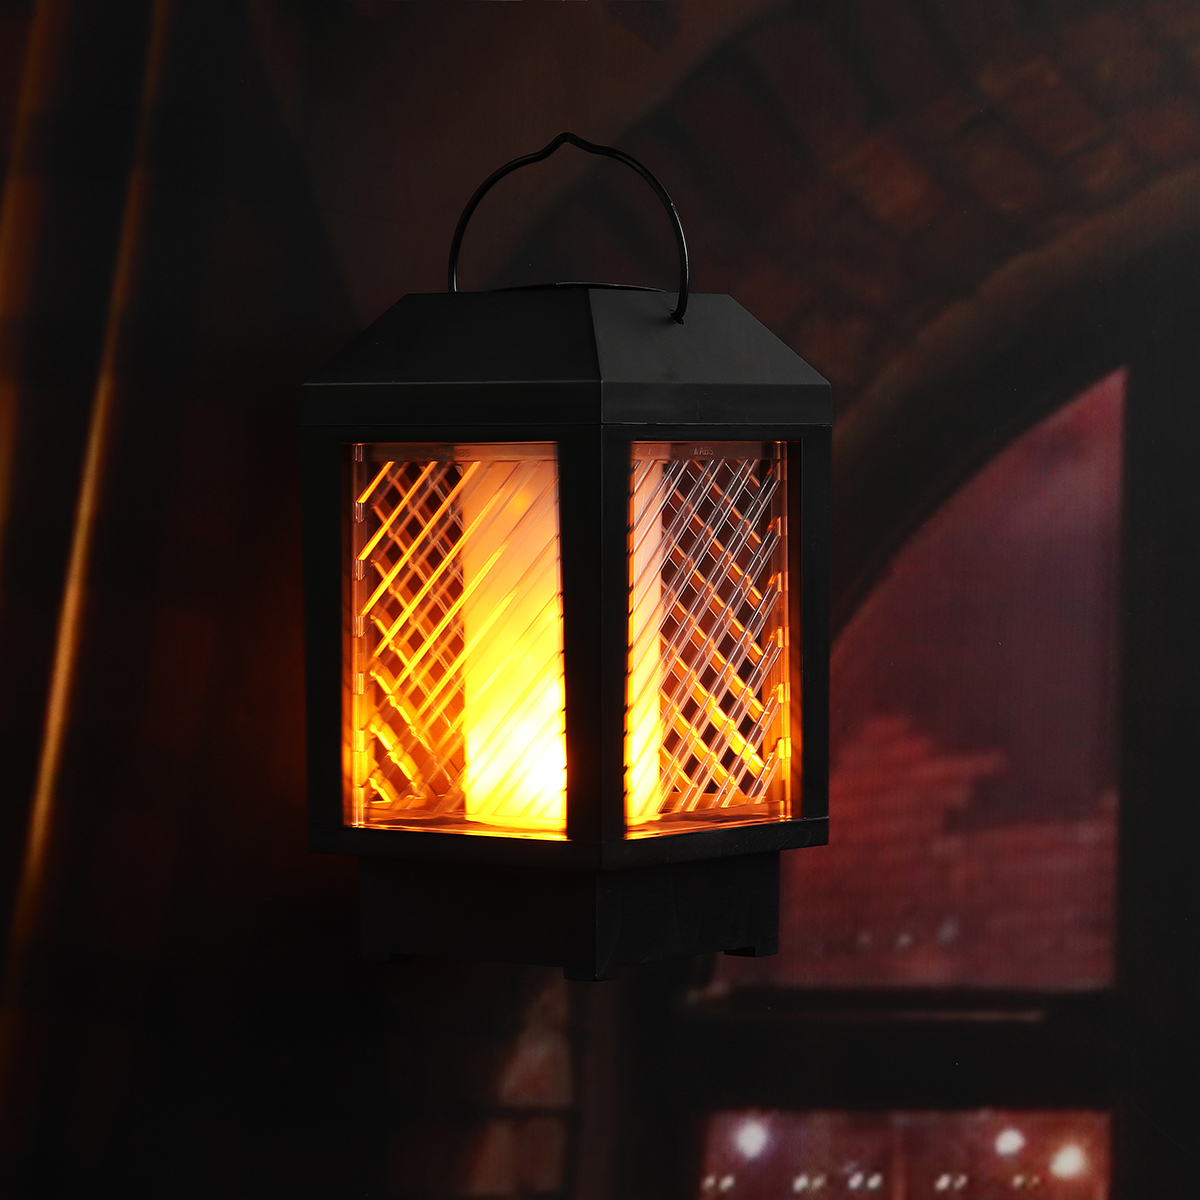 

96 LED Солнечная Мигание пламени Лампа На открытом воздухе Пейзаж Сад Декор Фонарь